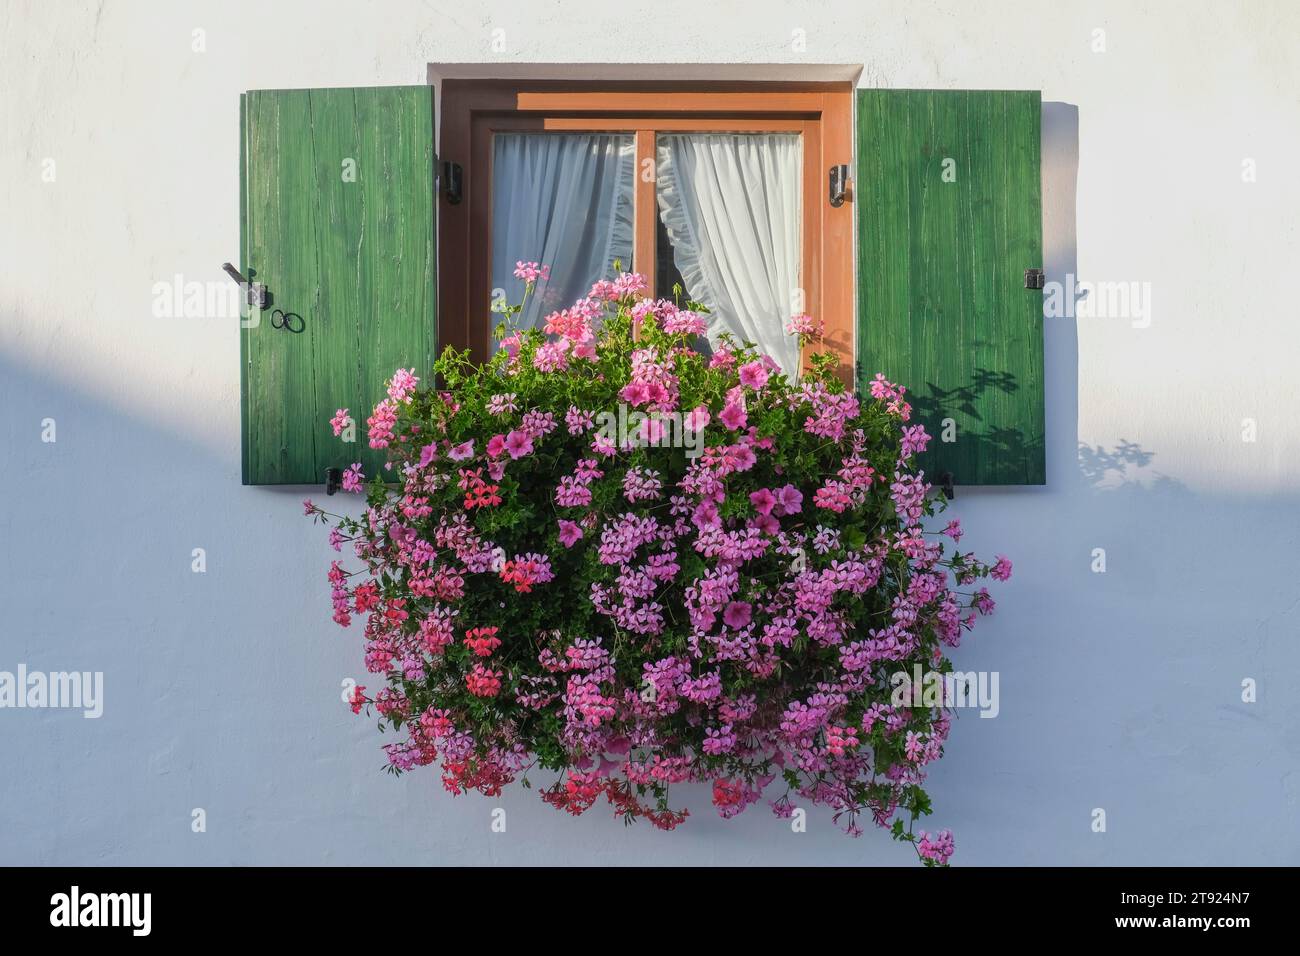 Fenster mit grünen Fensterläden, Abendlicht, Geranien und Petunien, weiße Hausfassade, Grainau, Bayern, Deutschland Stockfoto